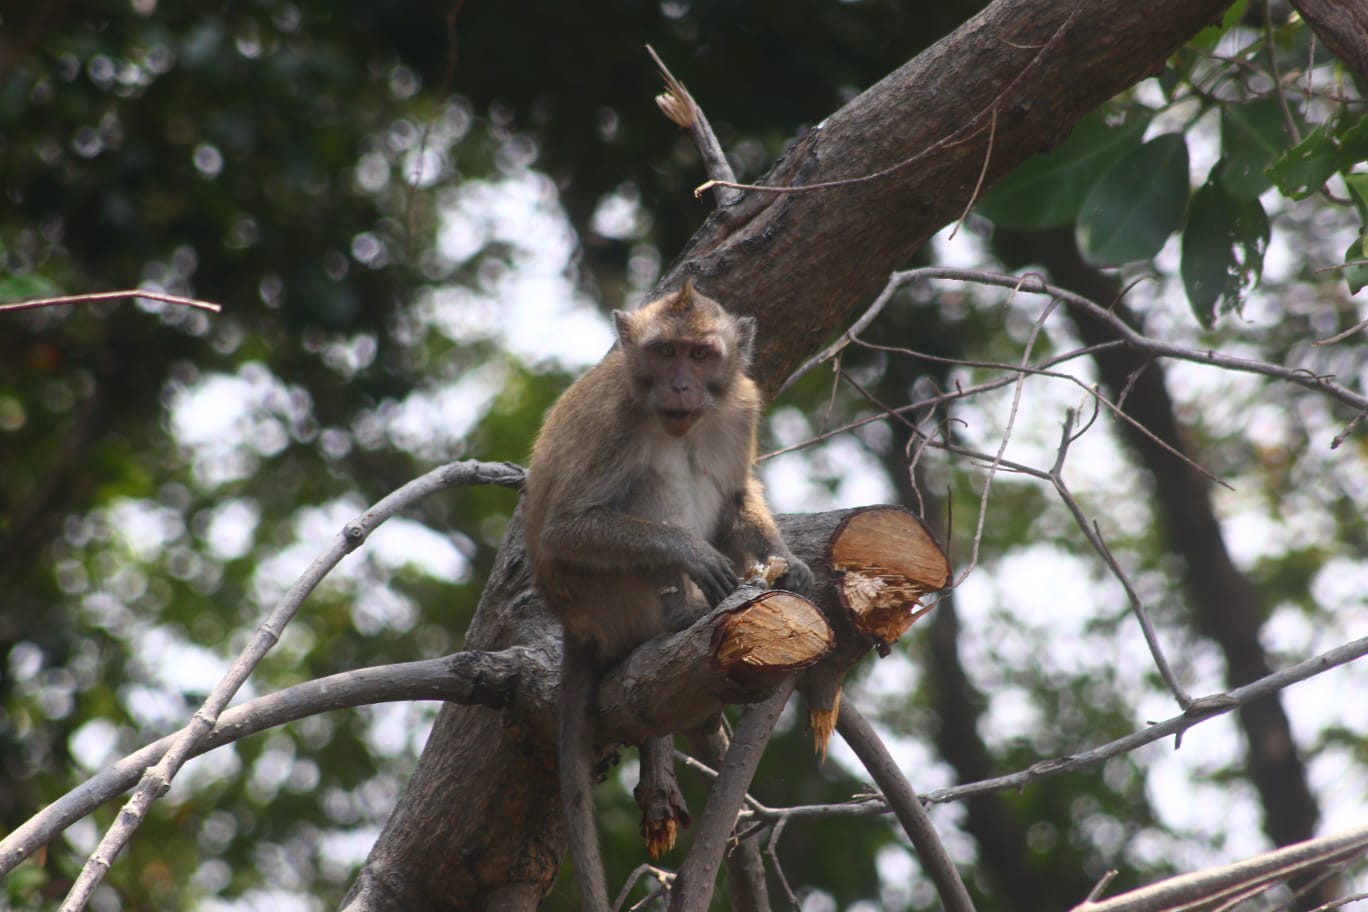 Potret Monyet Ekor Panjang Usai Pembabatan Mangrove Surabaya